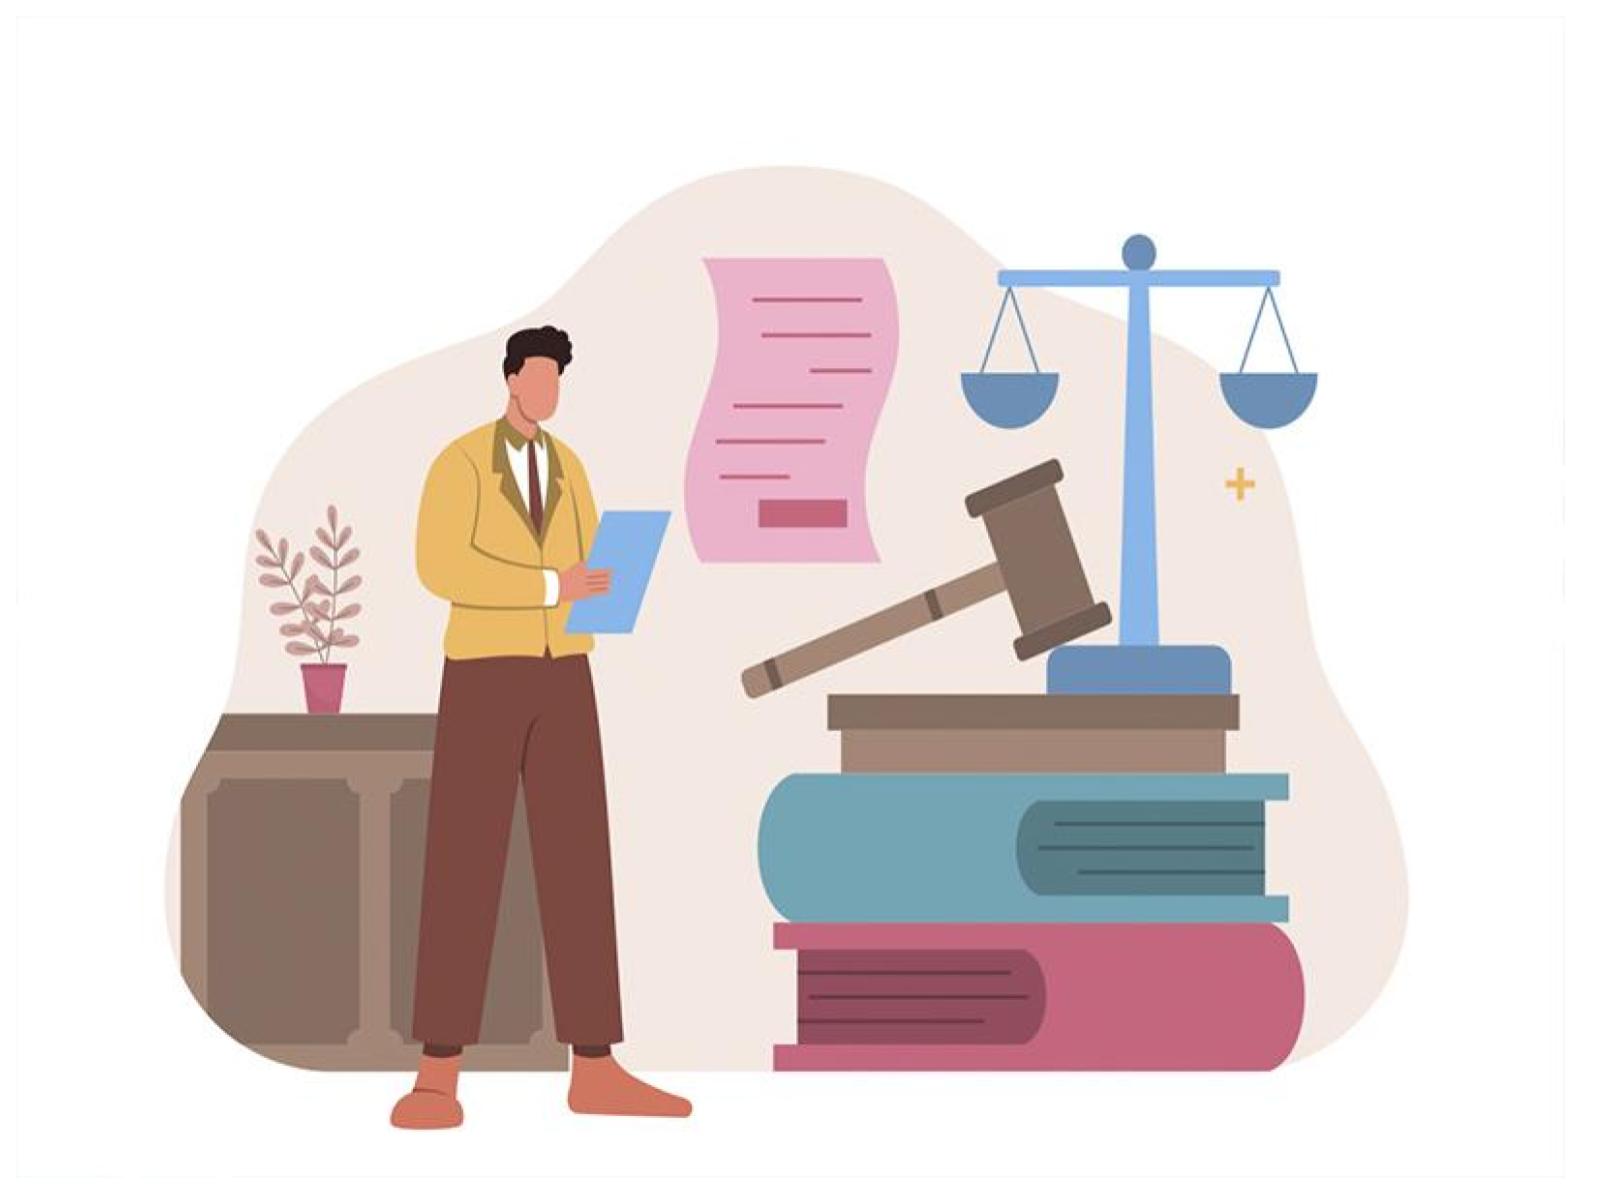 Бесплатная юридическая помощь: как получить бесплатно и на законных основаниях.